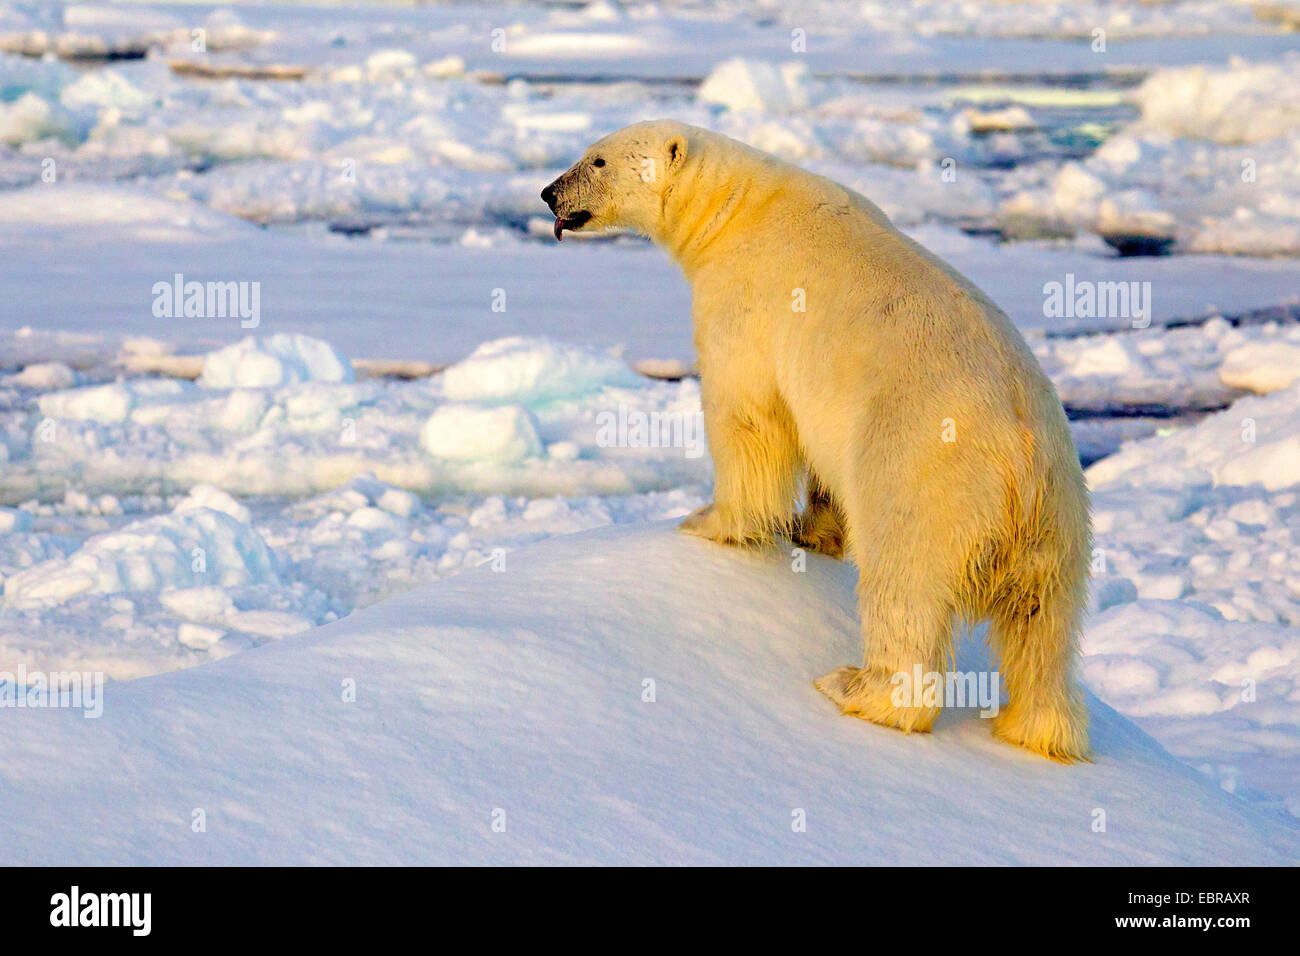 El oso polar (Ursus maritimus), escalada en hielo, Noruega, Svalbard Foto de stock